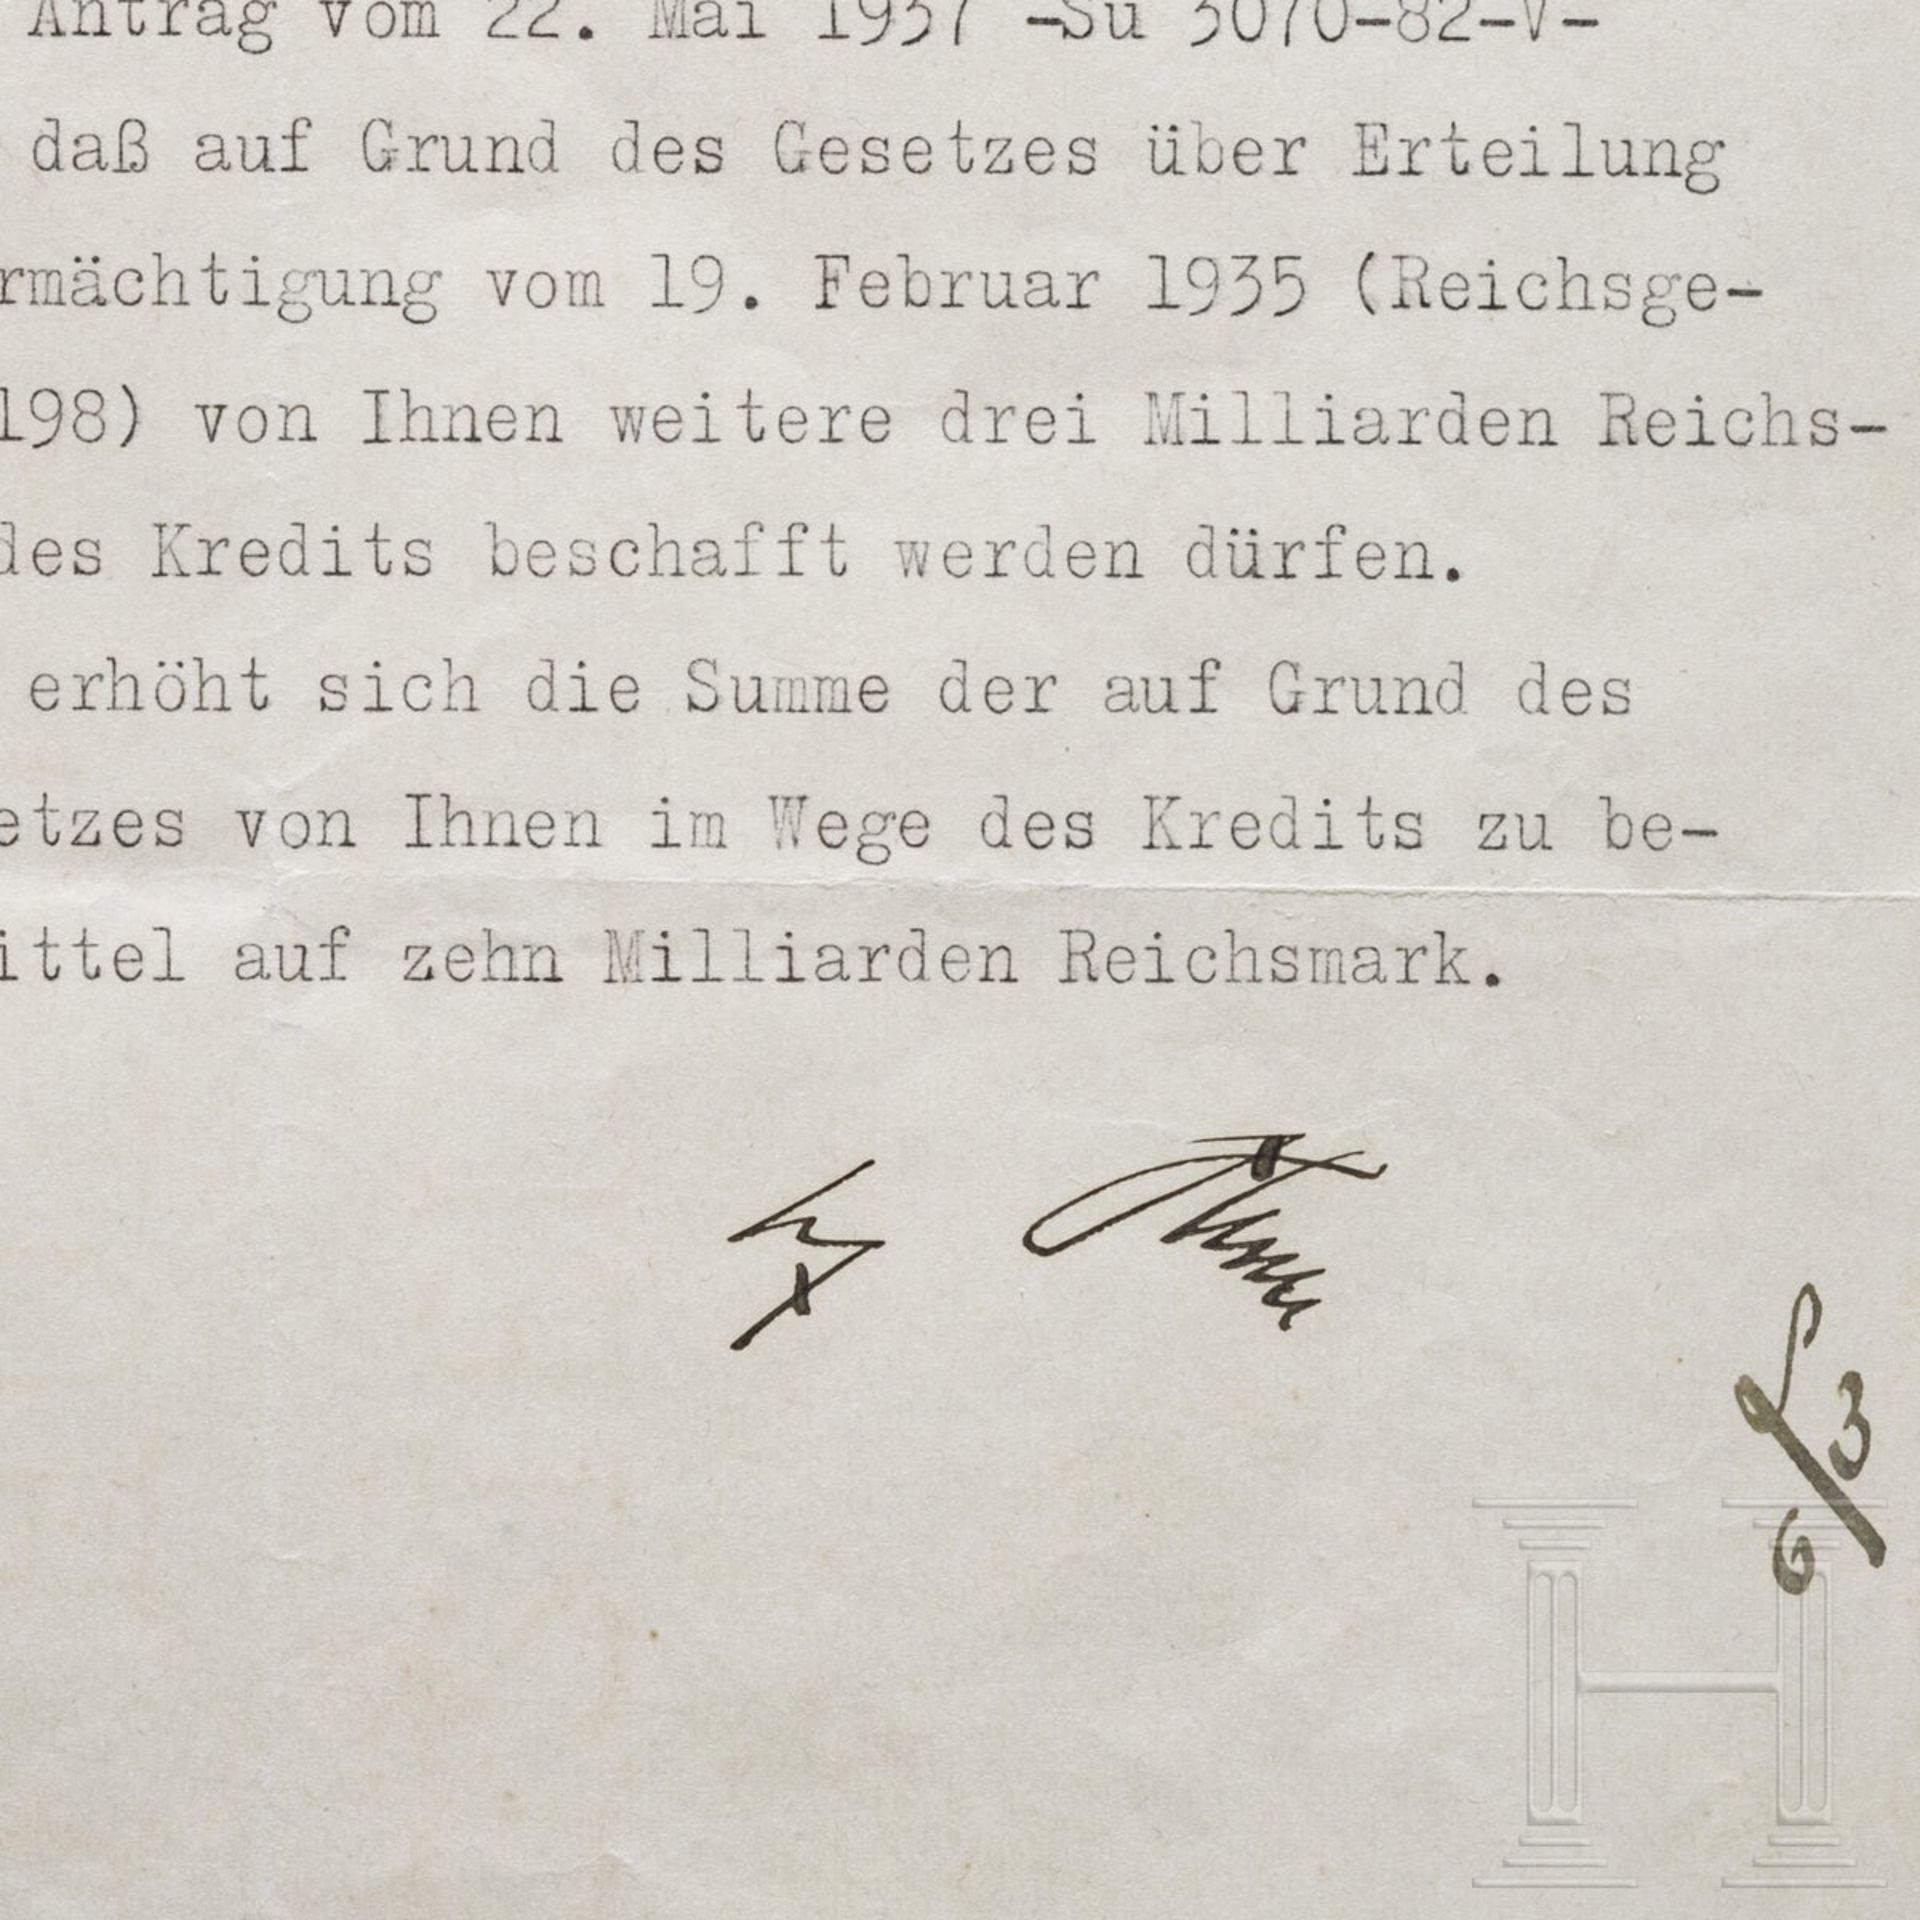 Adolf Hitler - Kreditermächtigung vom 3. Juni 1937 mit einer Erhöhung von 7 auf 10 Milliarden RM - Image 3 of 3